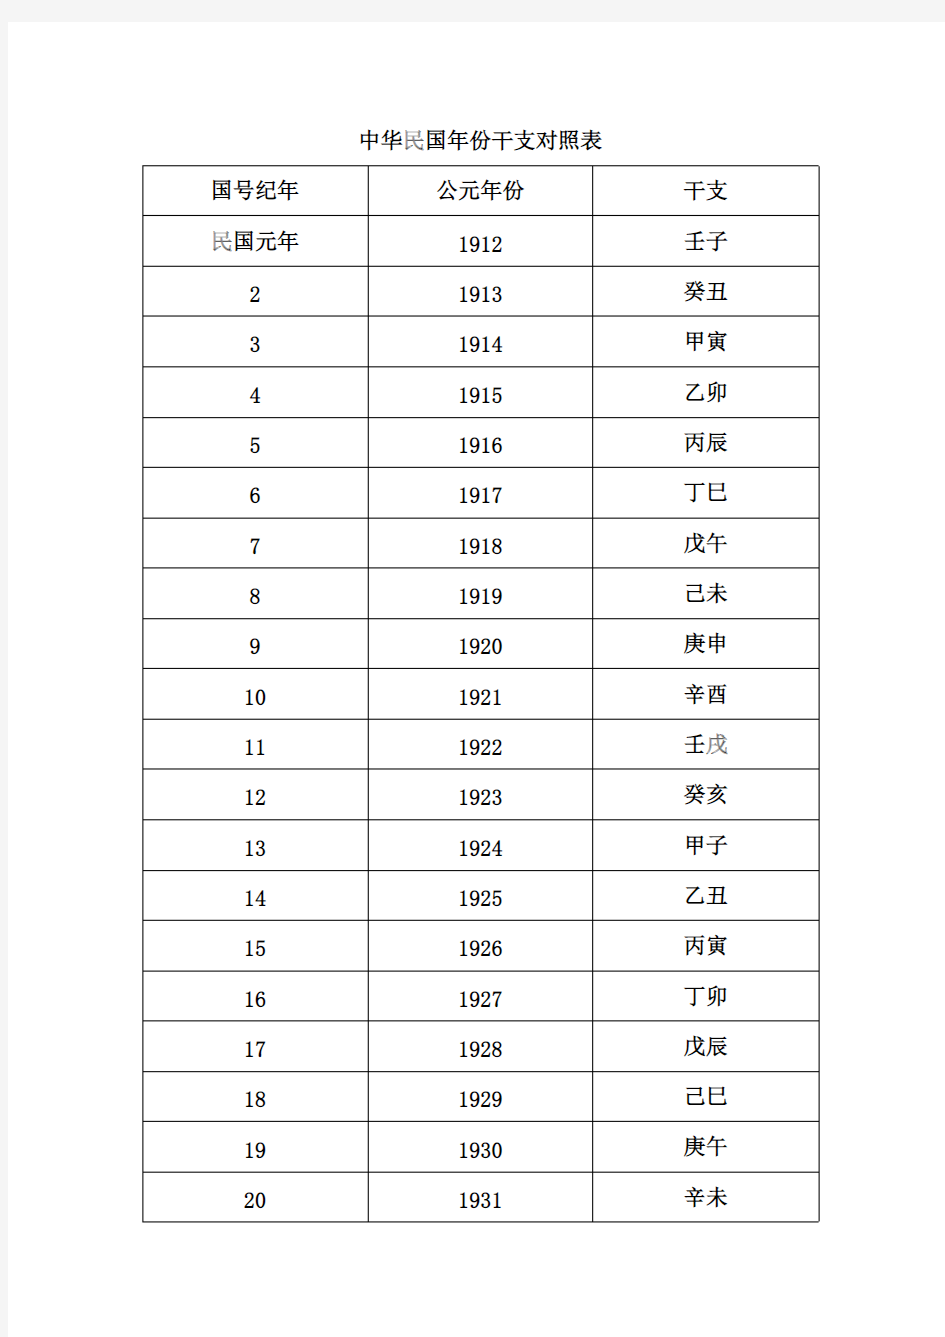 中国近代(中华民国、中华人民共和国)国号纪年、公元年份、干支对照简表-推荐下载